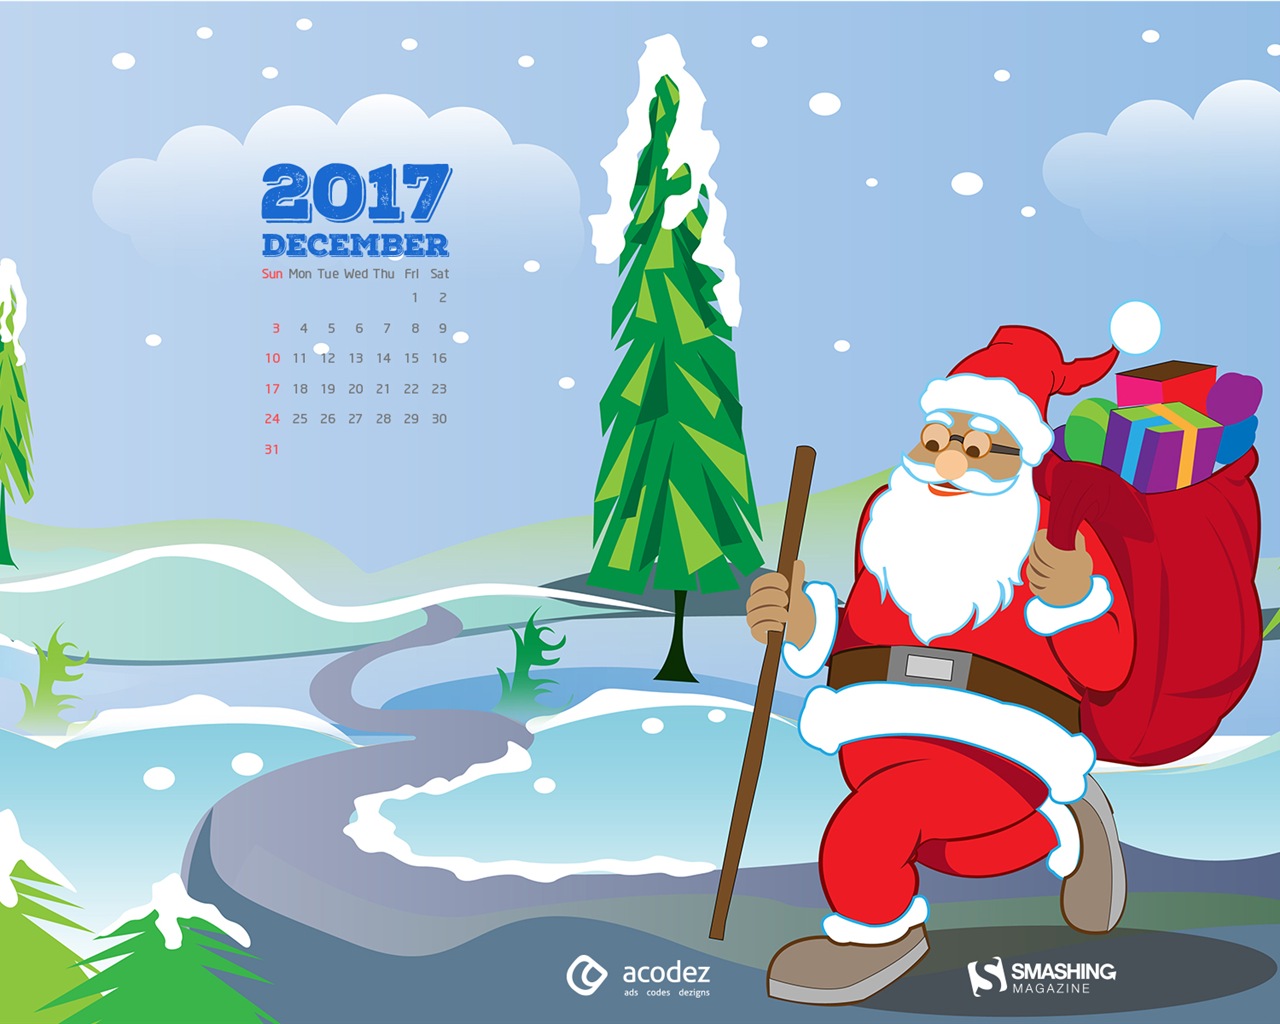 December 2017 Calendar Wallpaper #17 - 1280x1024